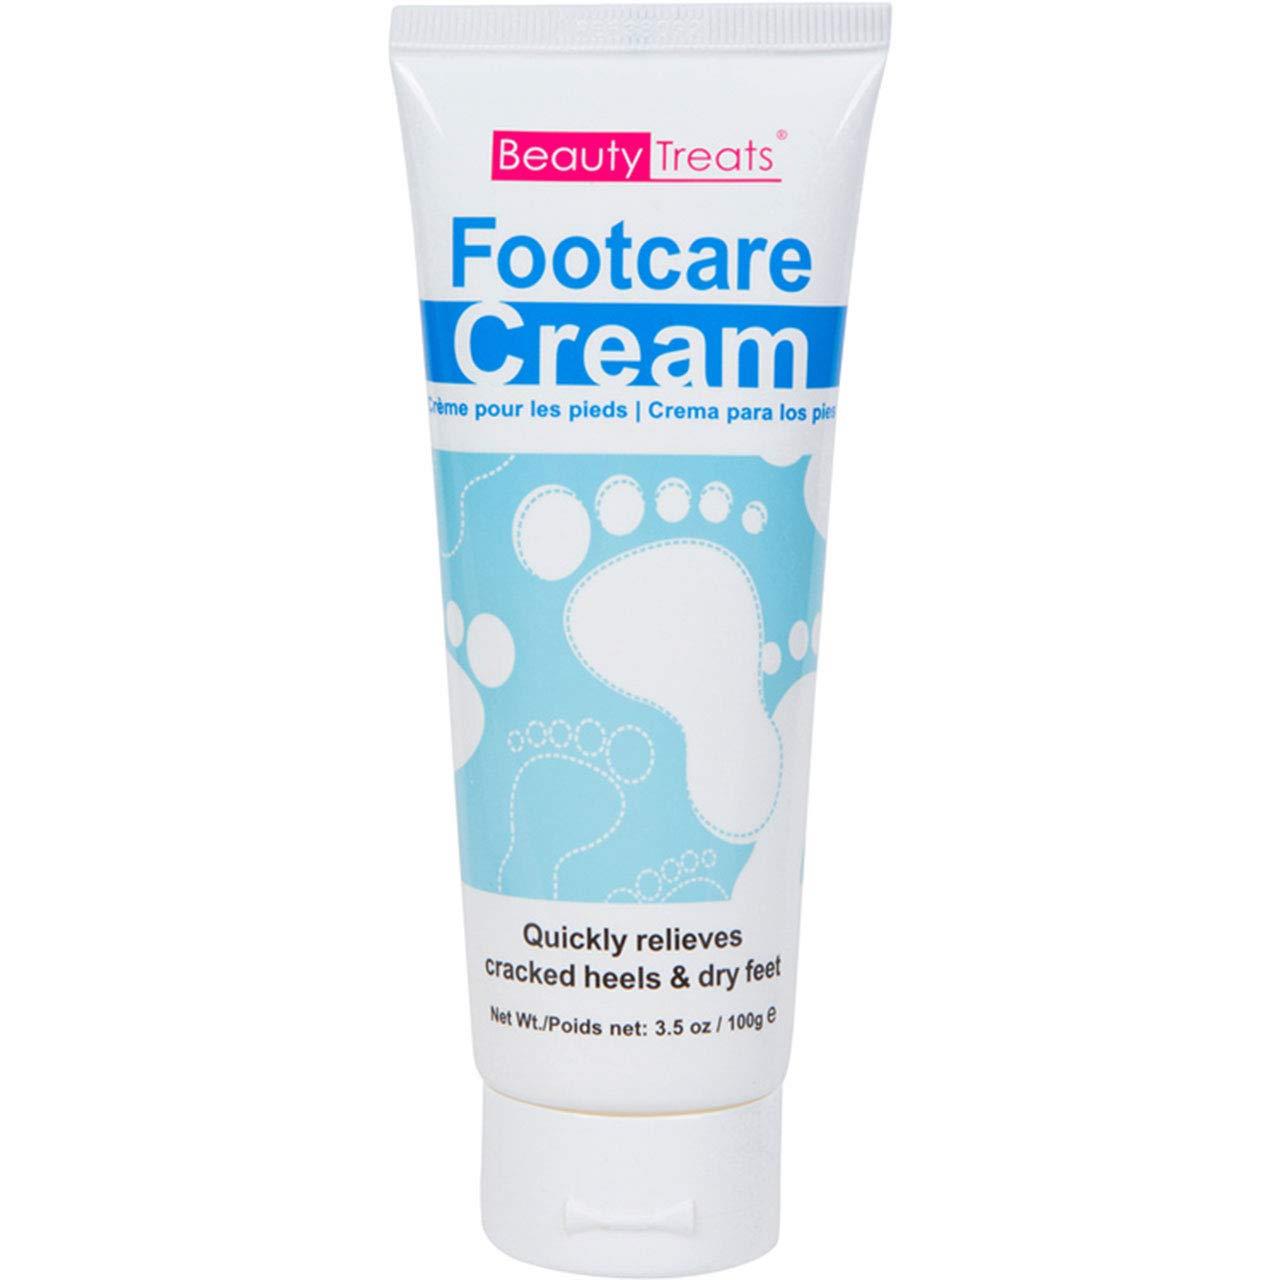 Beauty Treats Footcare Cream